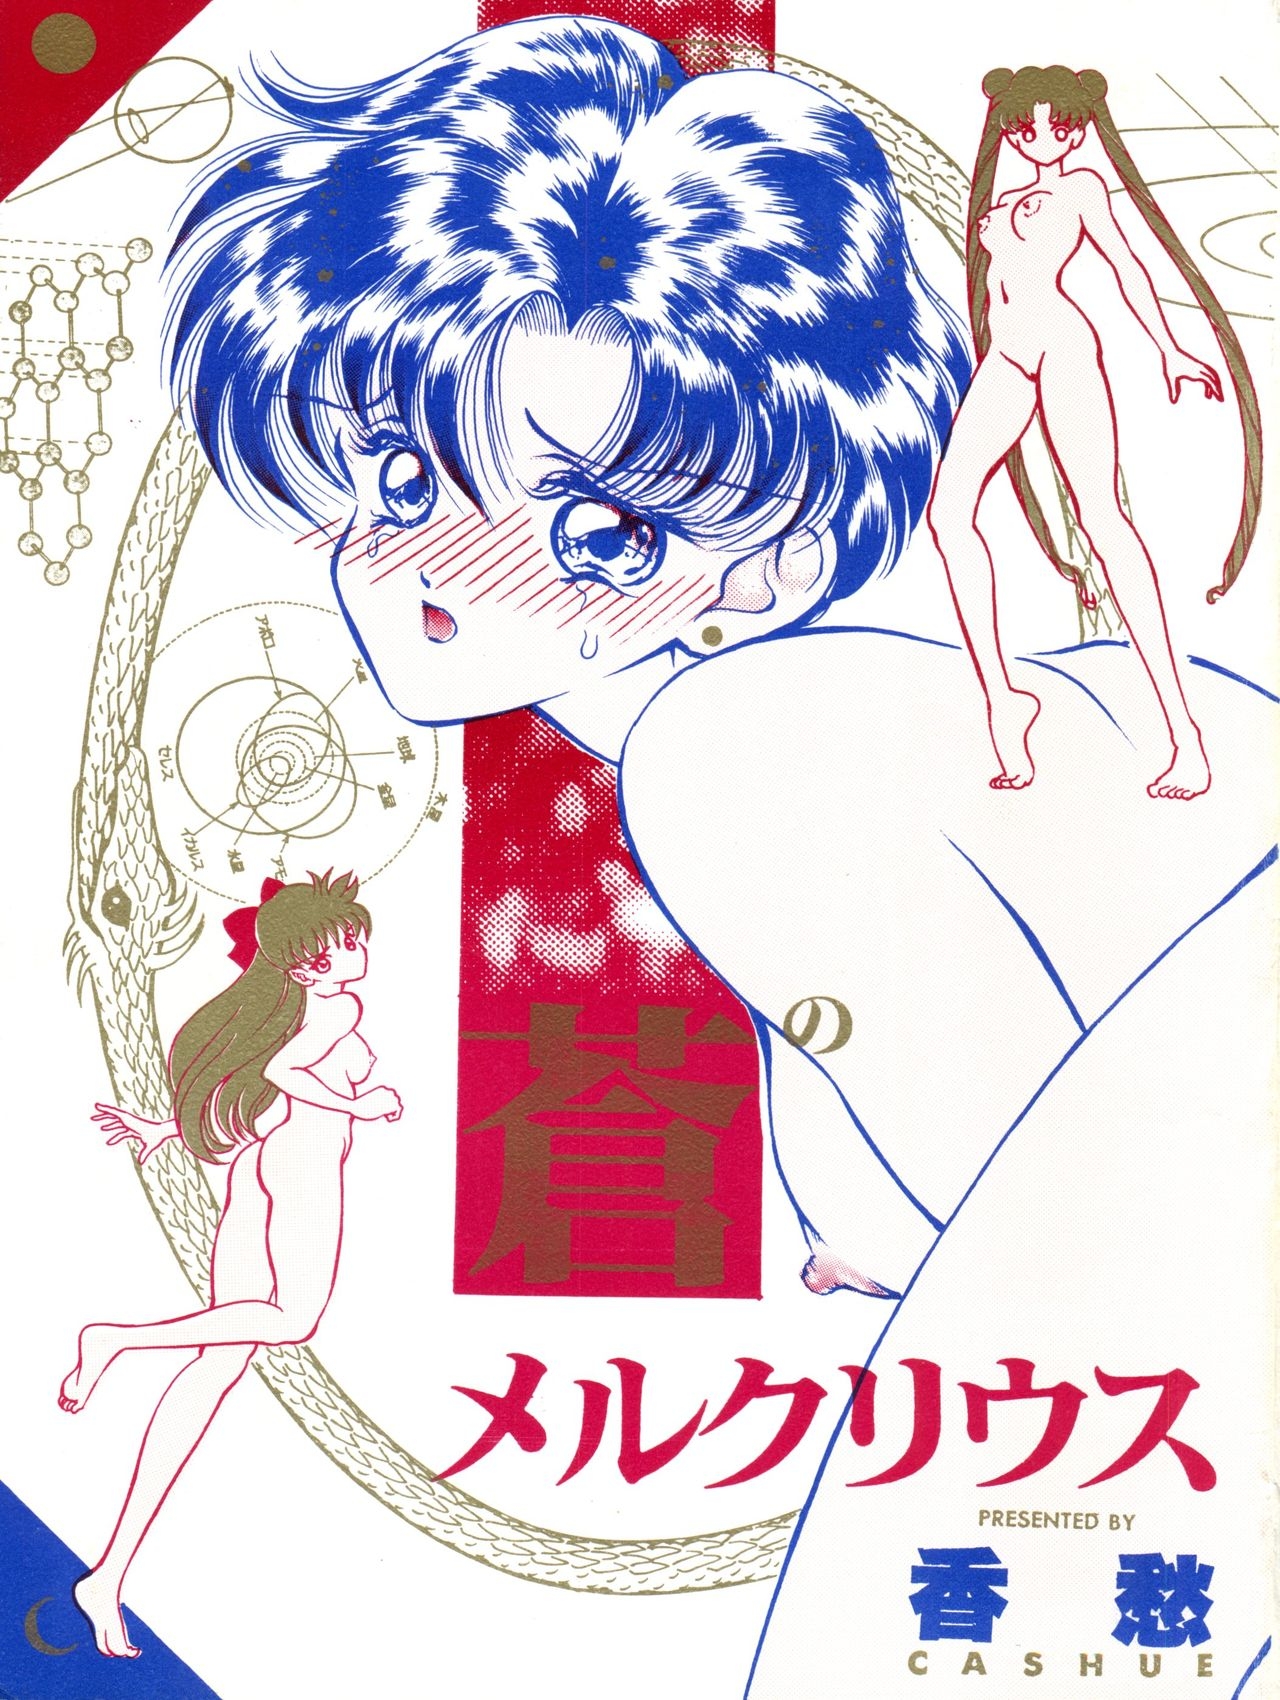 [Orihimeya (Cashue)] Aoi no Mercury (Bishoujo Senshi Sailor Moon) 1